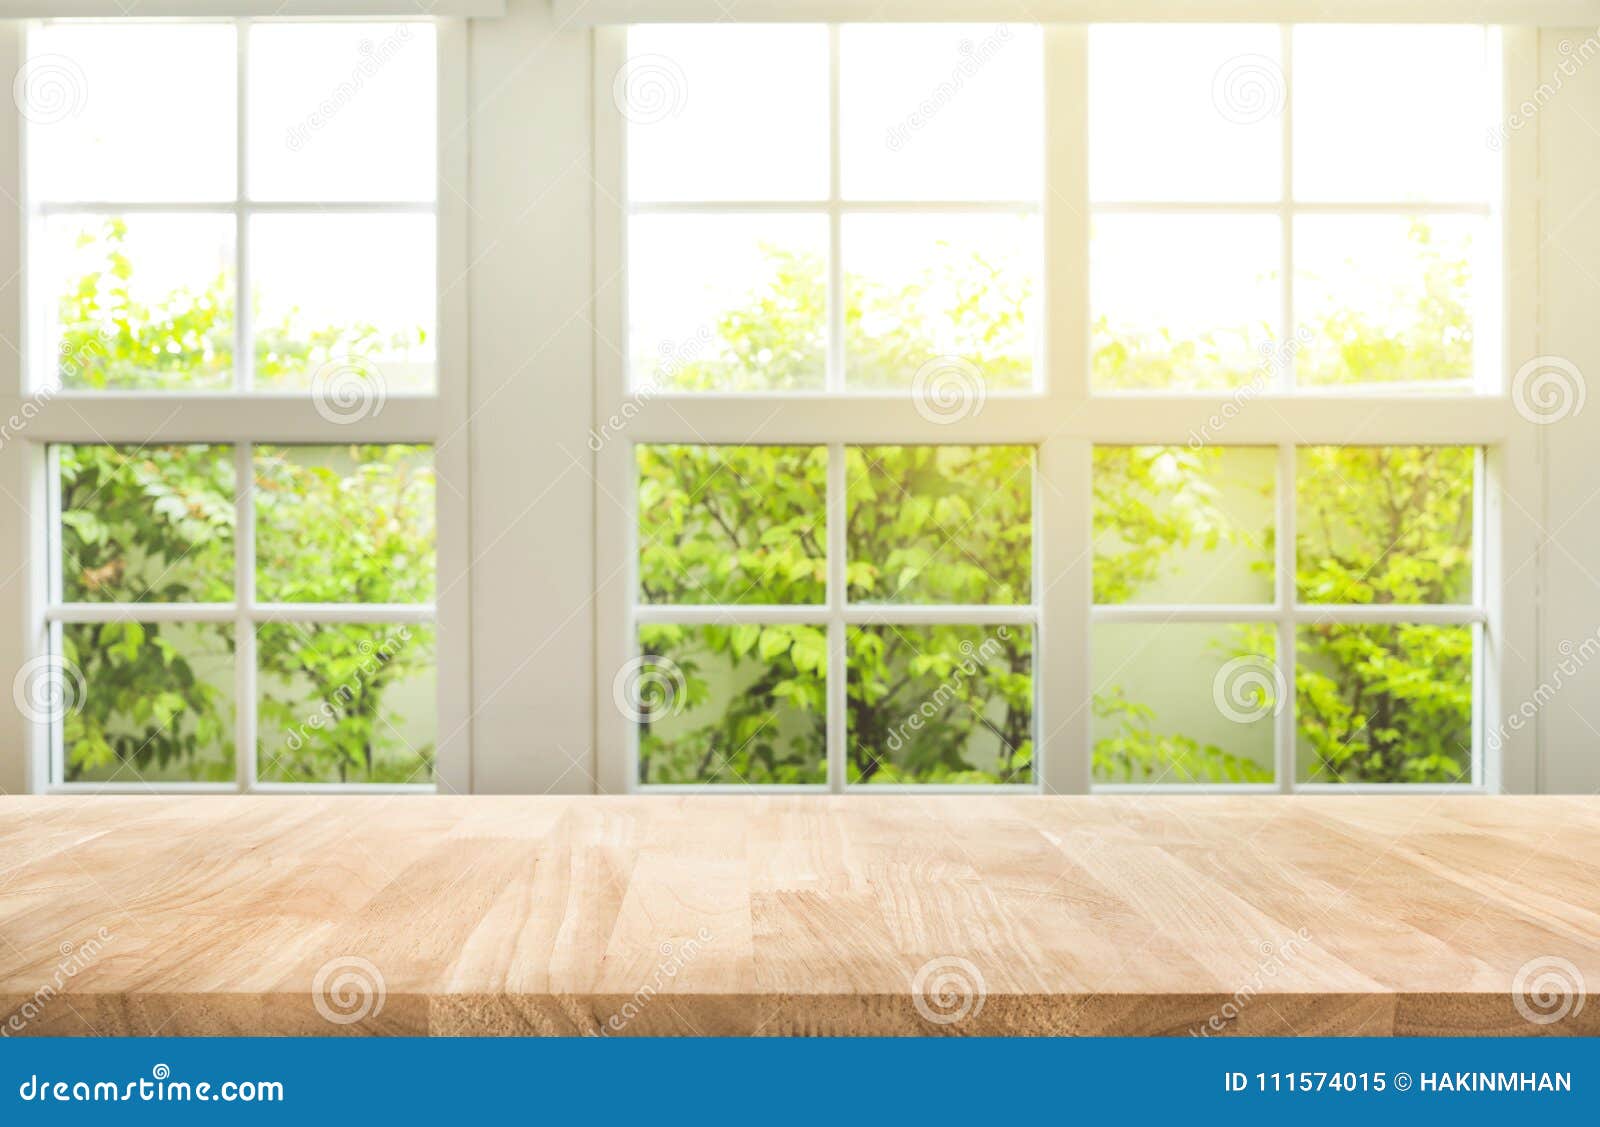 Với những hình ảnh cửa sổ mờ, bạn sẽ có cảm giác như đang nhìn vào những khung cảnh yên bình, mơ màng. Điều này giúp bạn thư giãn, tập trung và hiệu quả hơn khi làm việc.